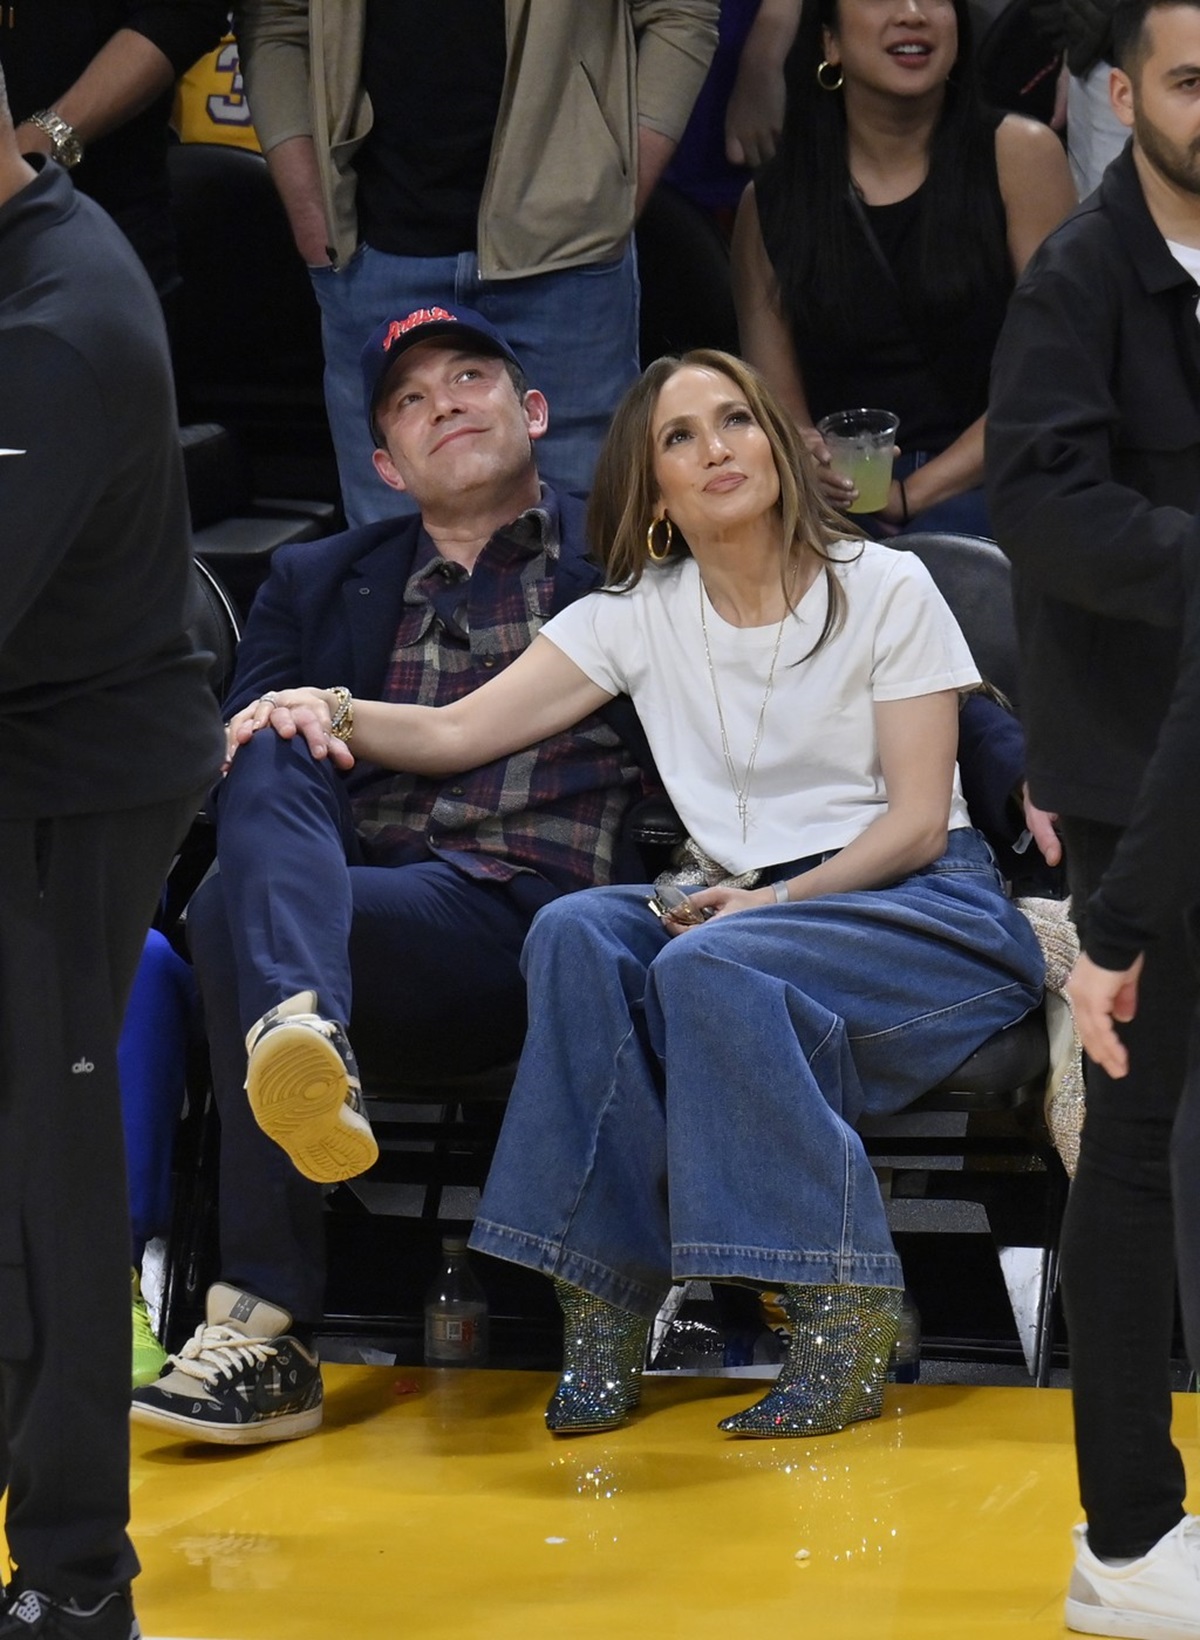 Jennifer Lopez stând cu mânna pe piciorul lui Ben Affleck în timpul unui meci de baschet